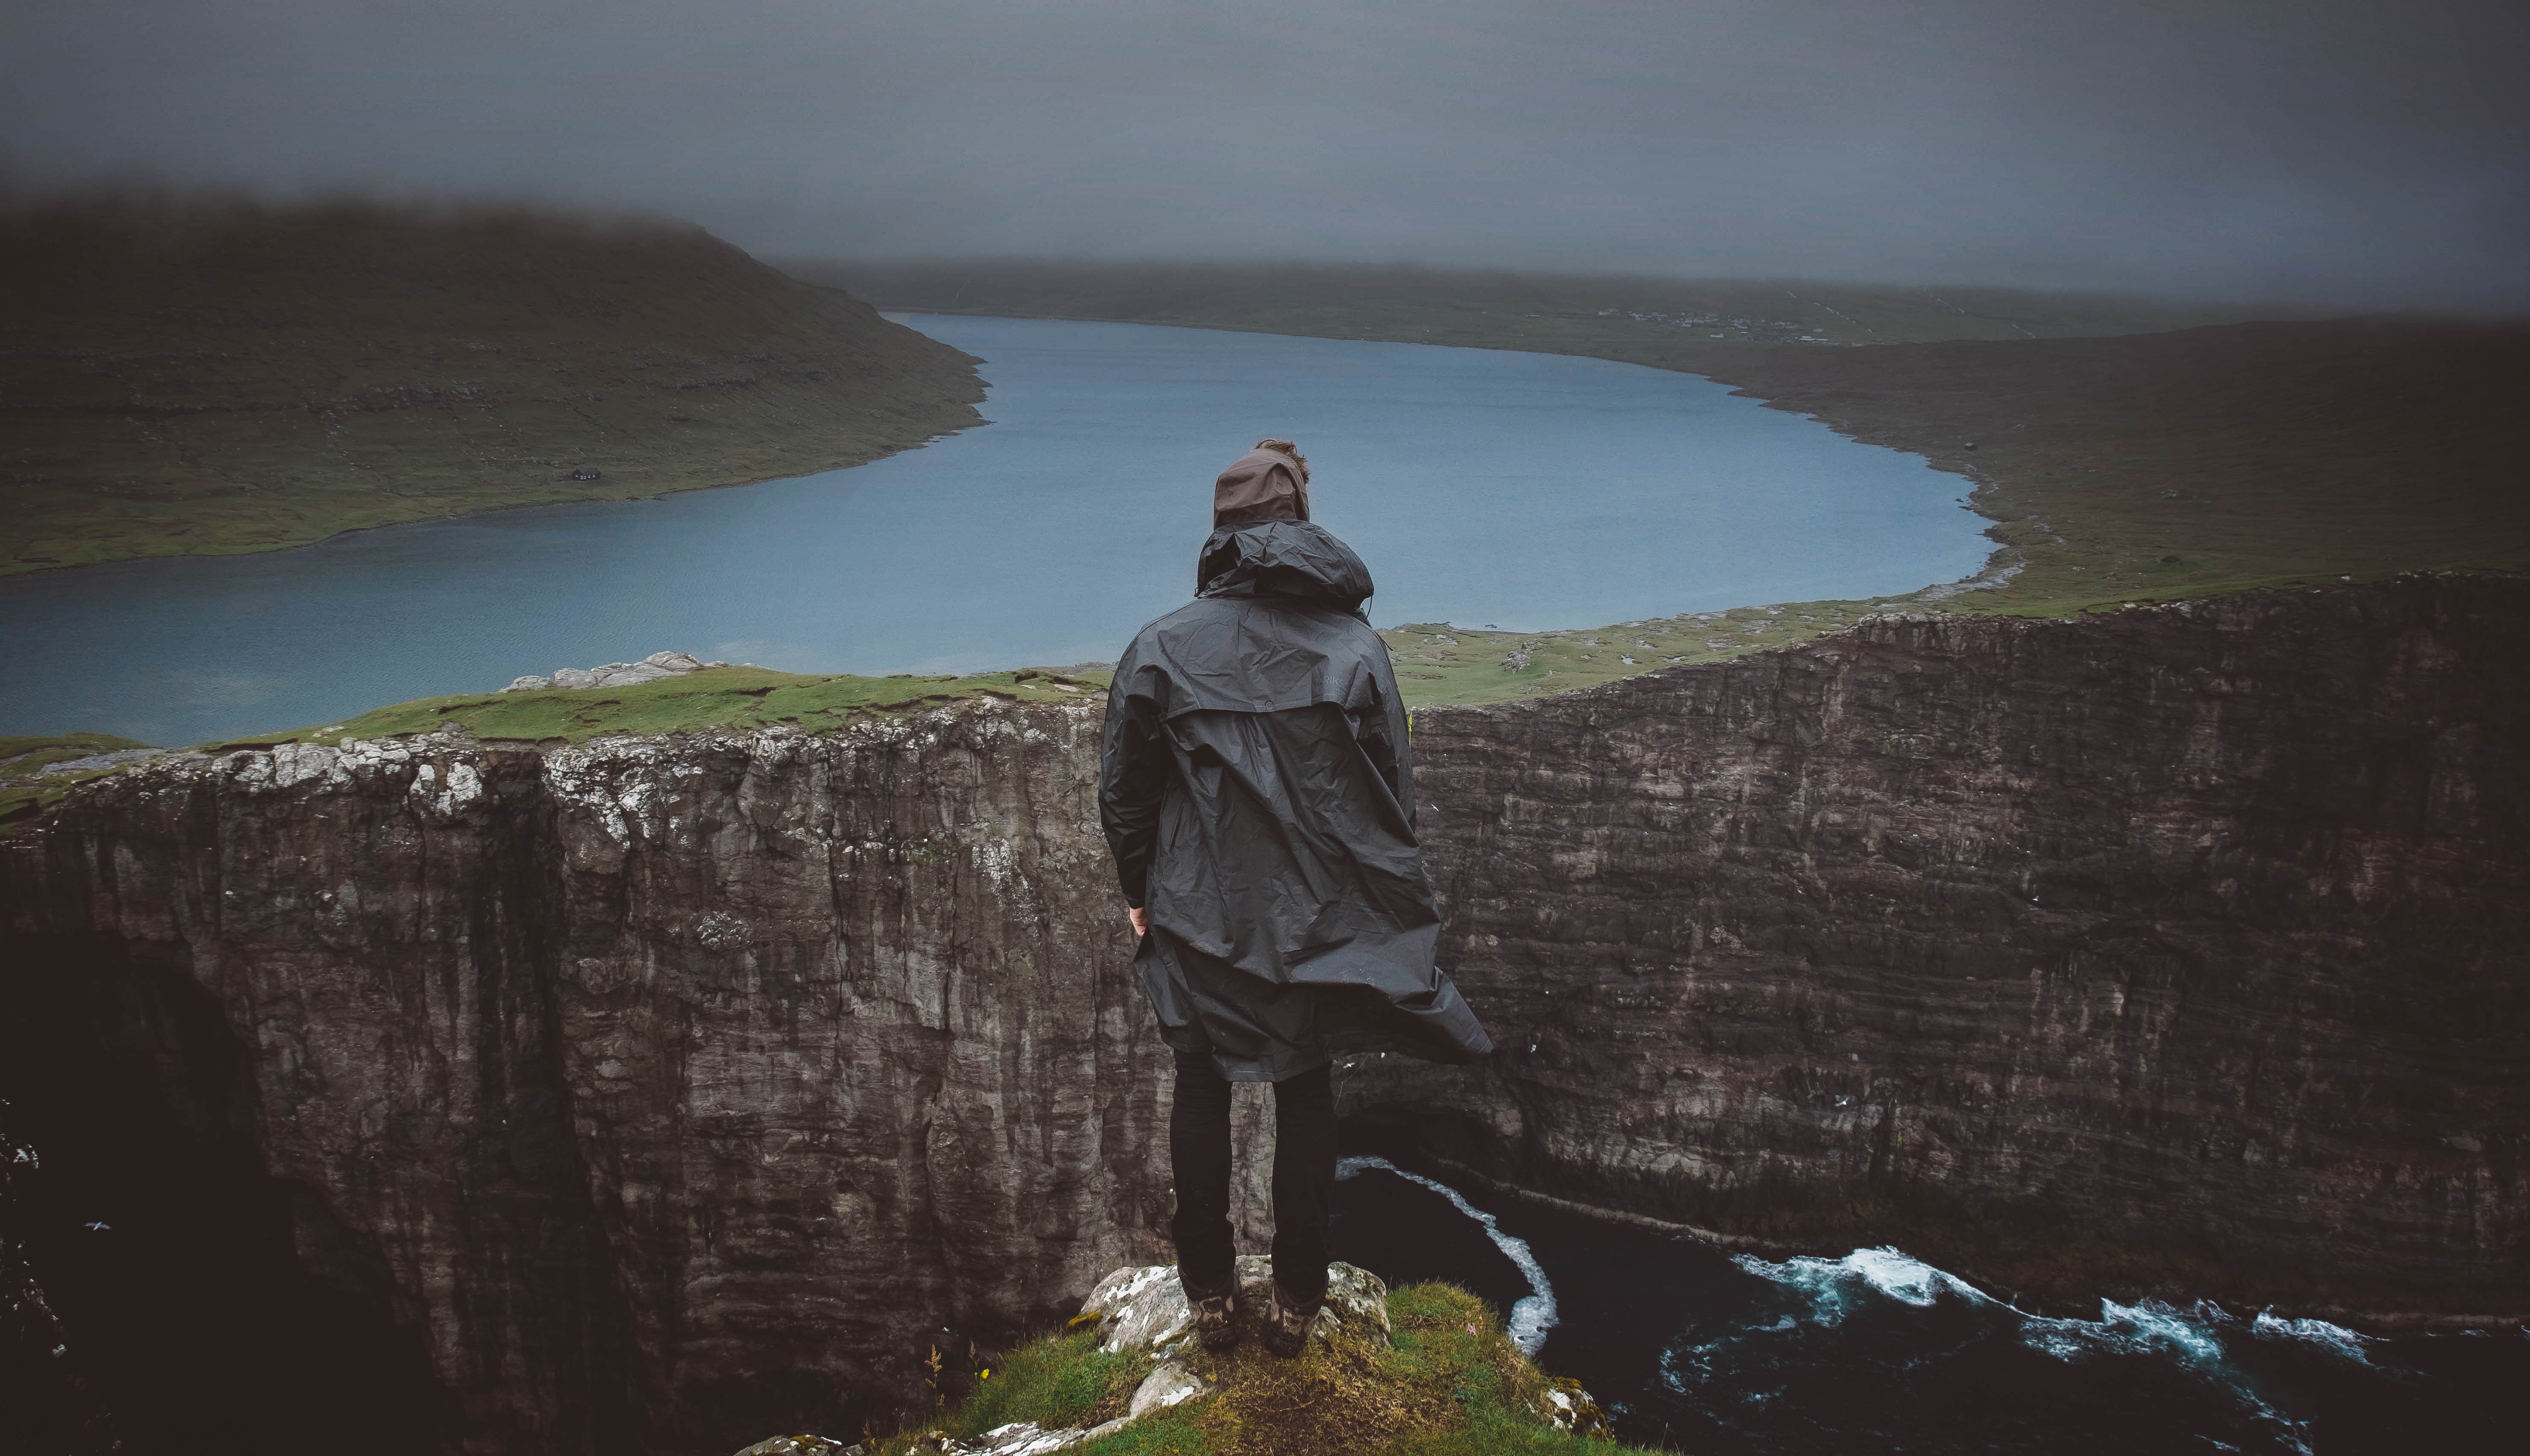 rivers, landscape, miscellanea, miscellaneous, fog, cliff, human, person Image for desktop